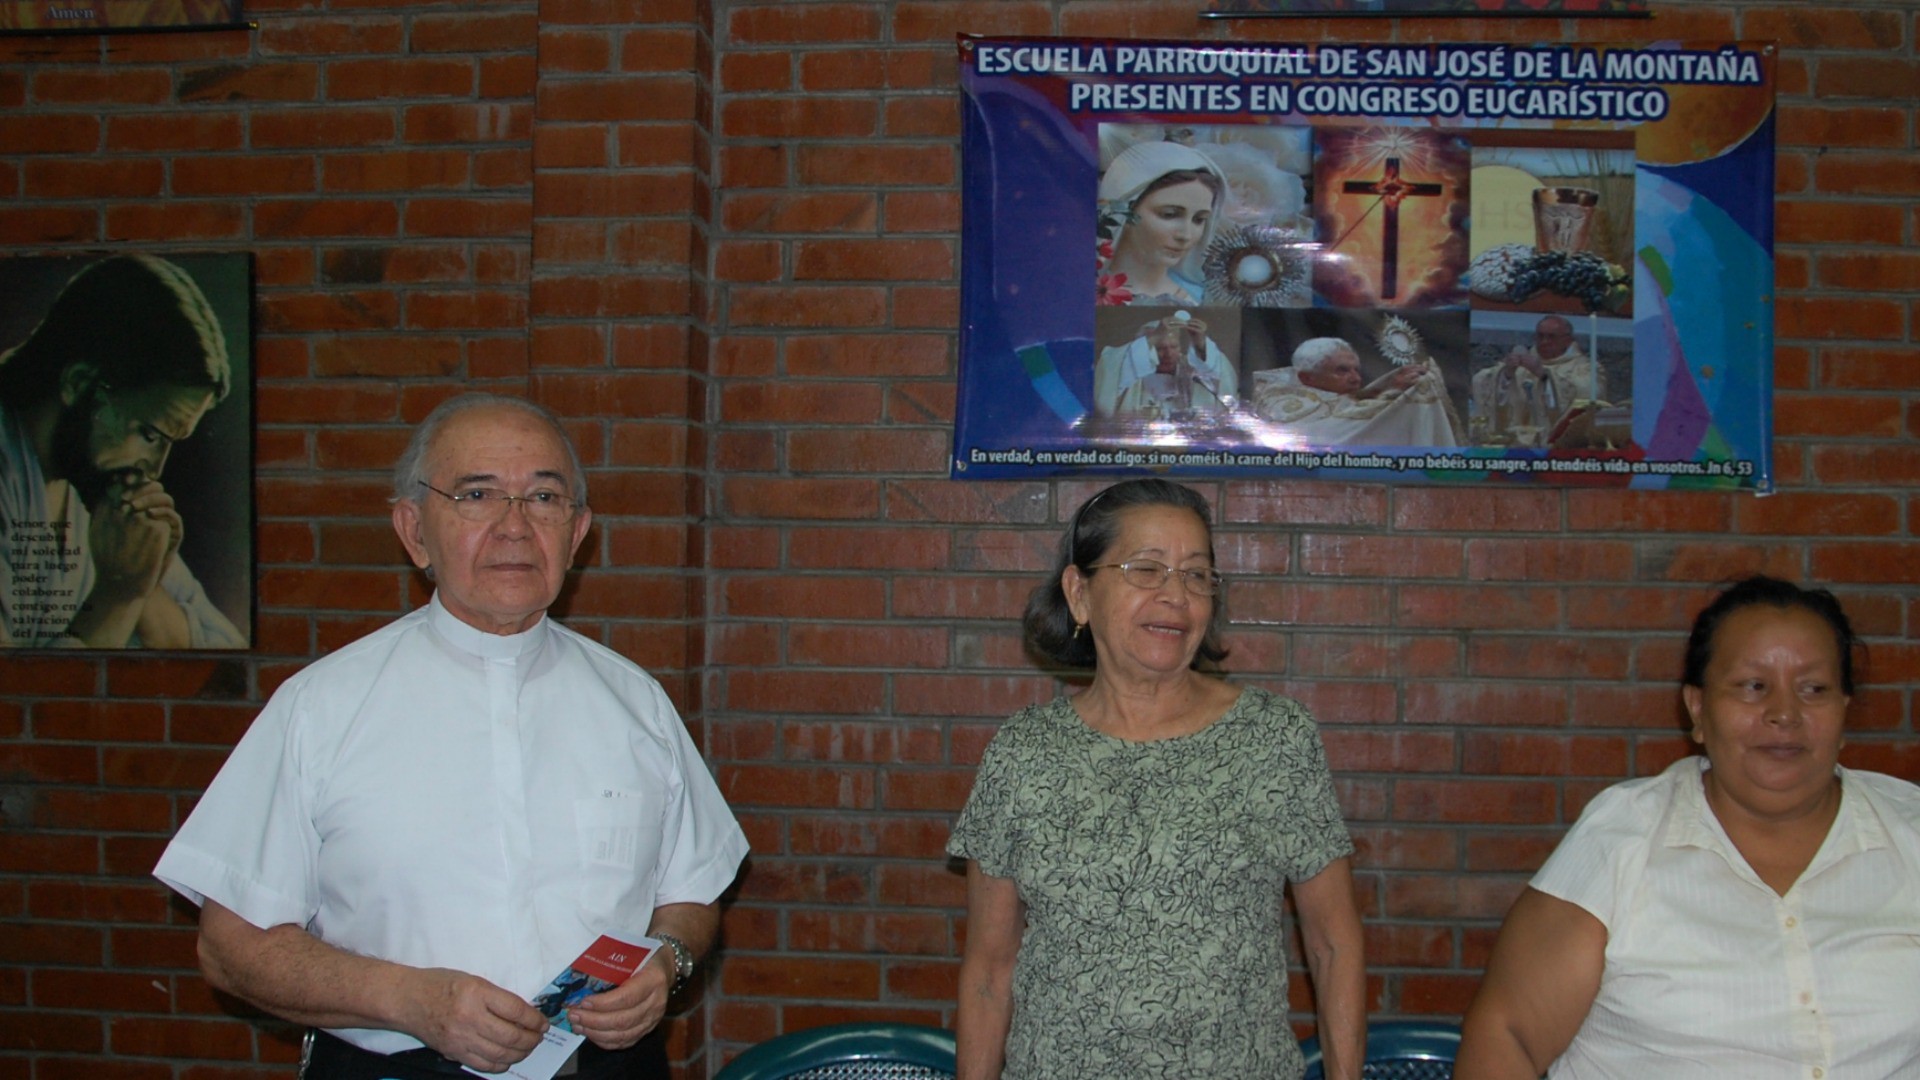 Mgr Jesus Delgado Acevedo, vicaire général de l'archidiocèse de San Salvador et curé de la paroisse de San José de la Montaña (Photo: Jacques Berset)